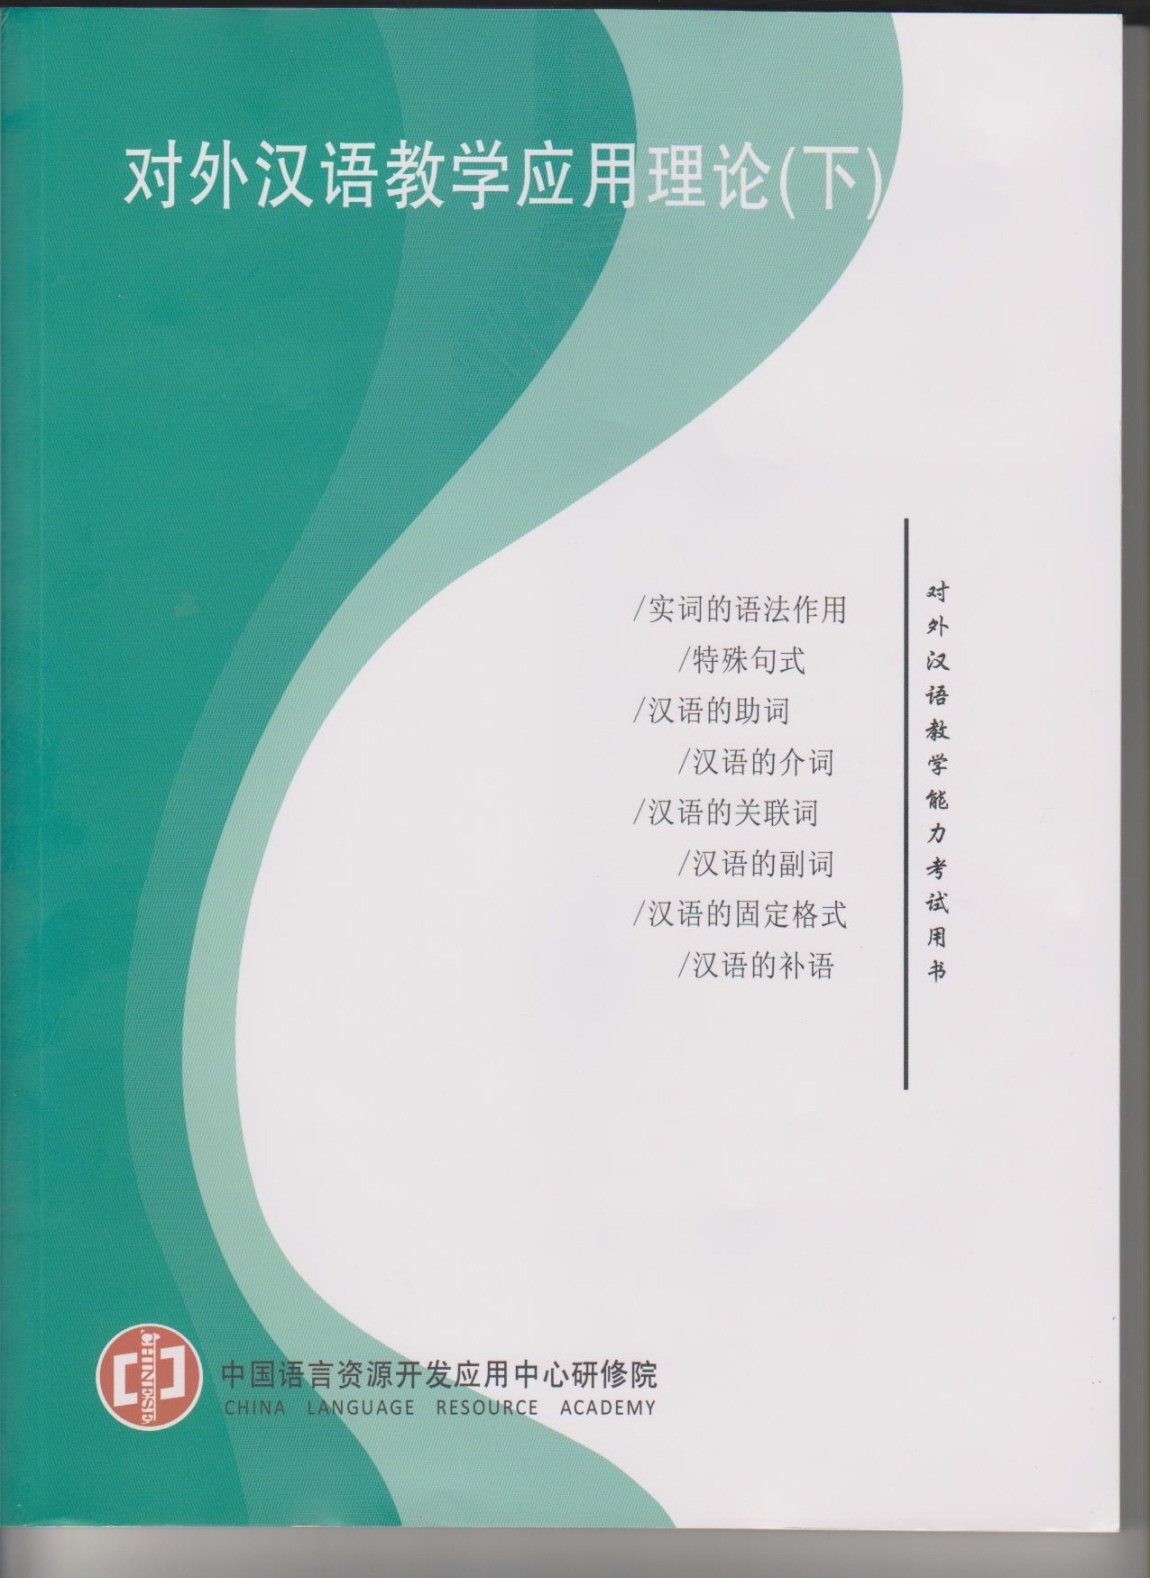 국제한어교사자격교과서(하)